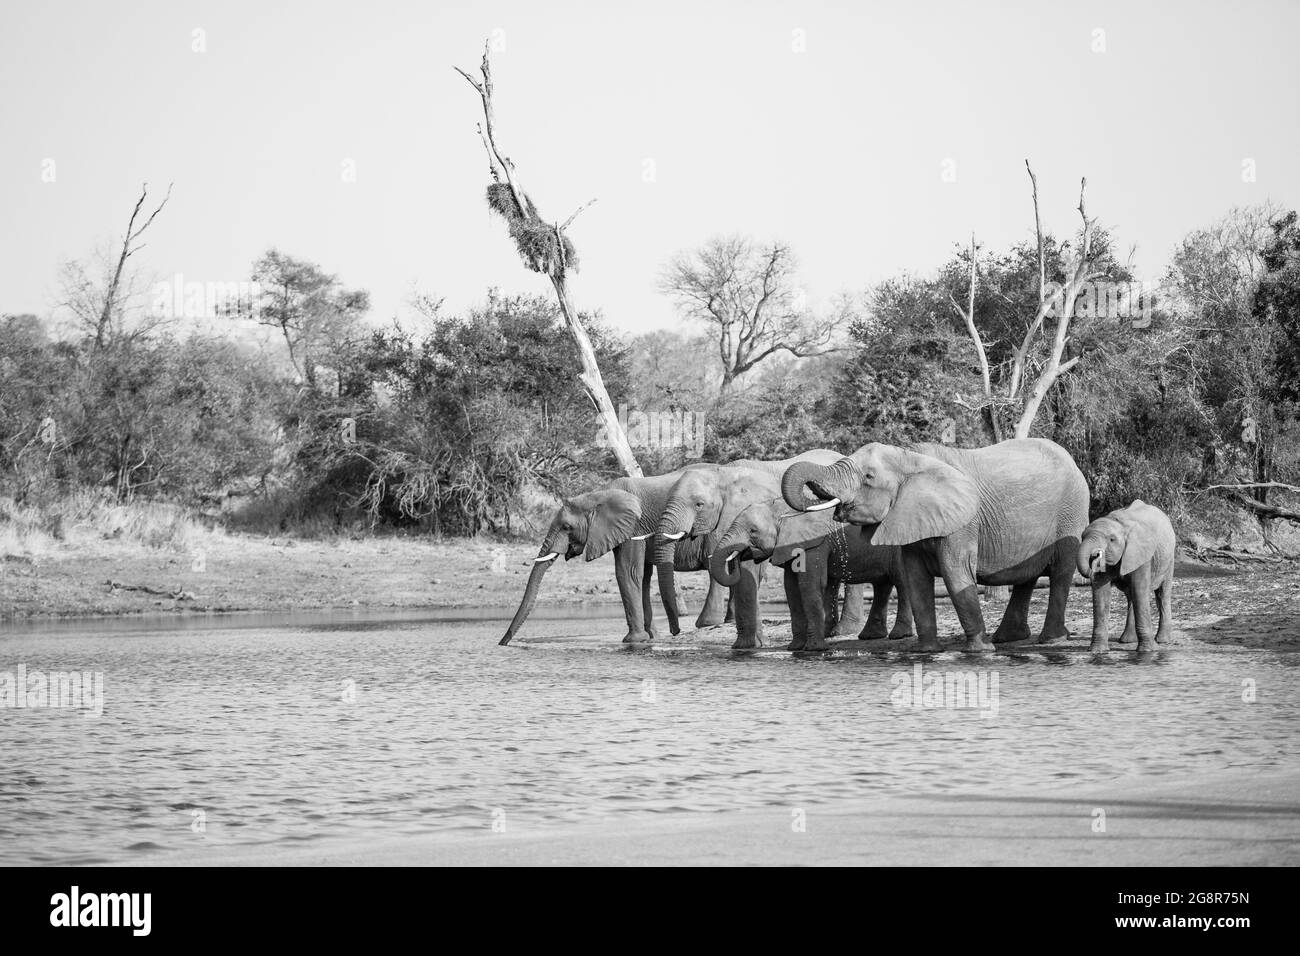 Un troupeau d'éléphants, Loxodonta africana, est debout et boit dans un trou d'eau, en noir et blanc Banque D'Images